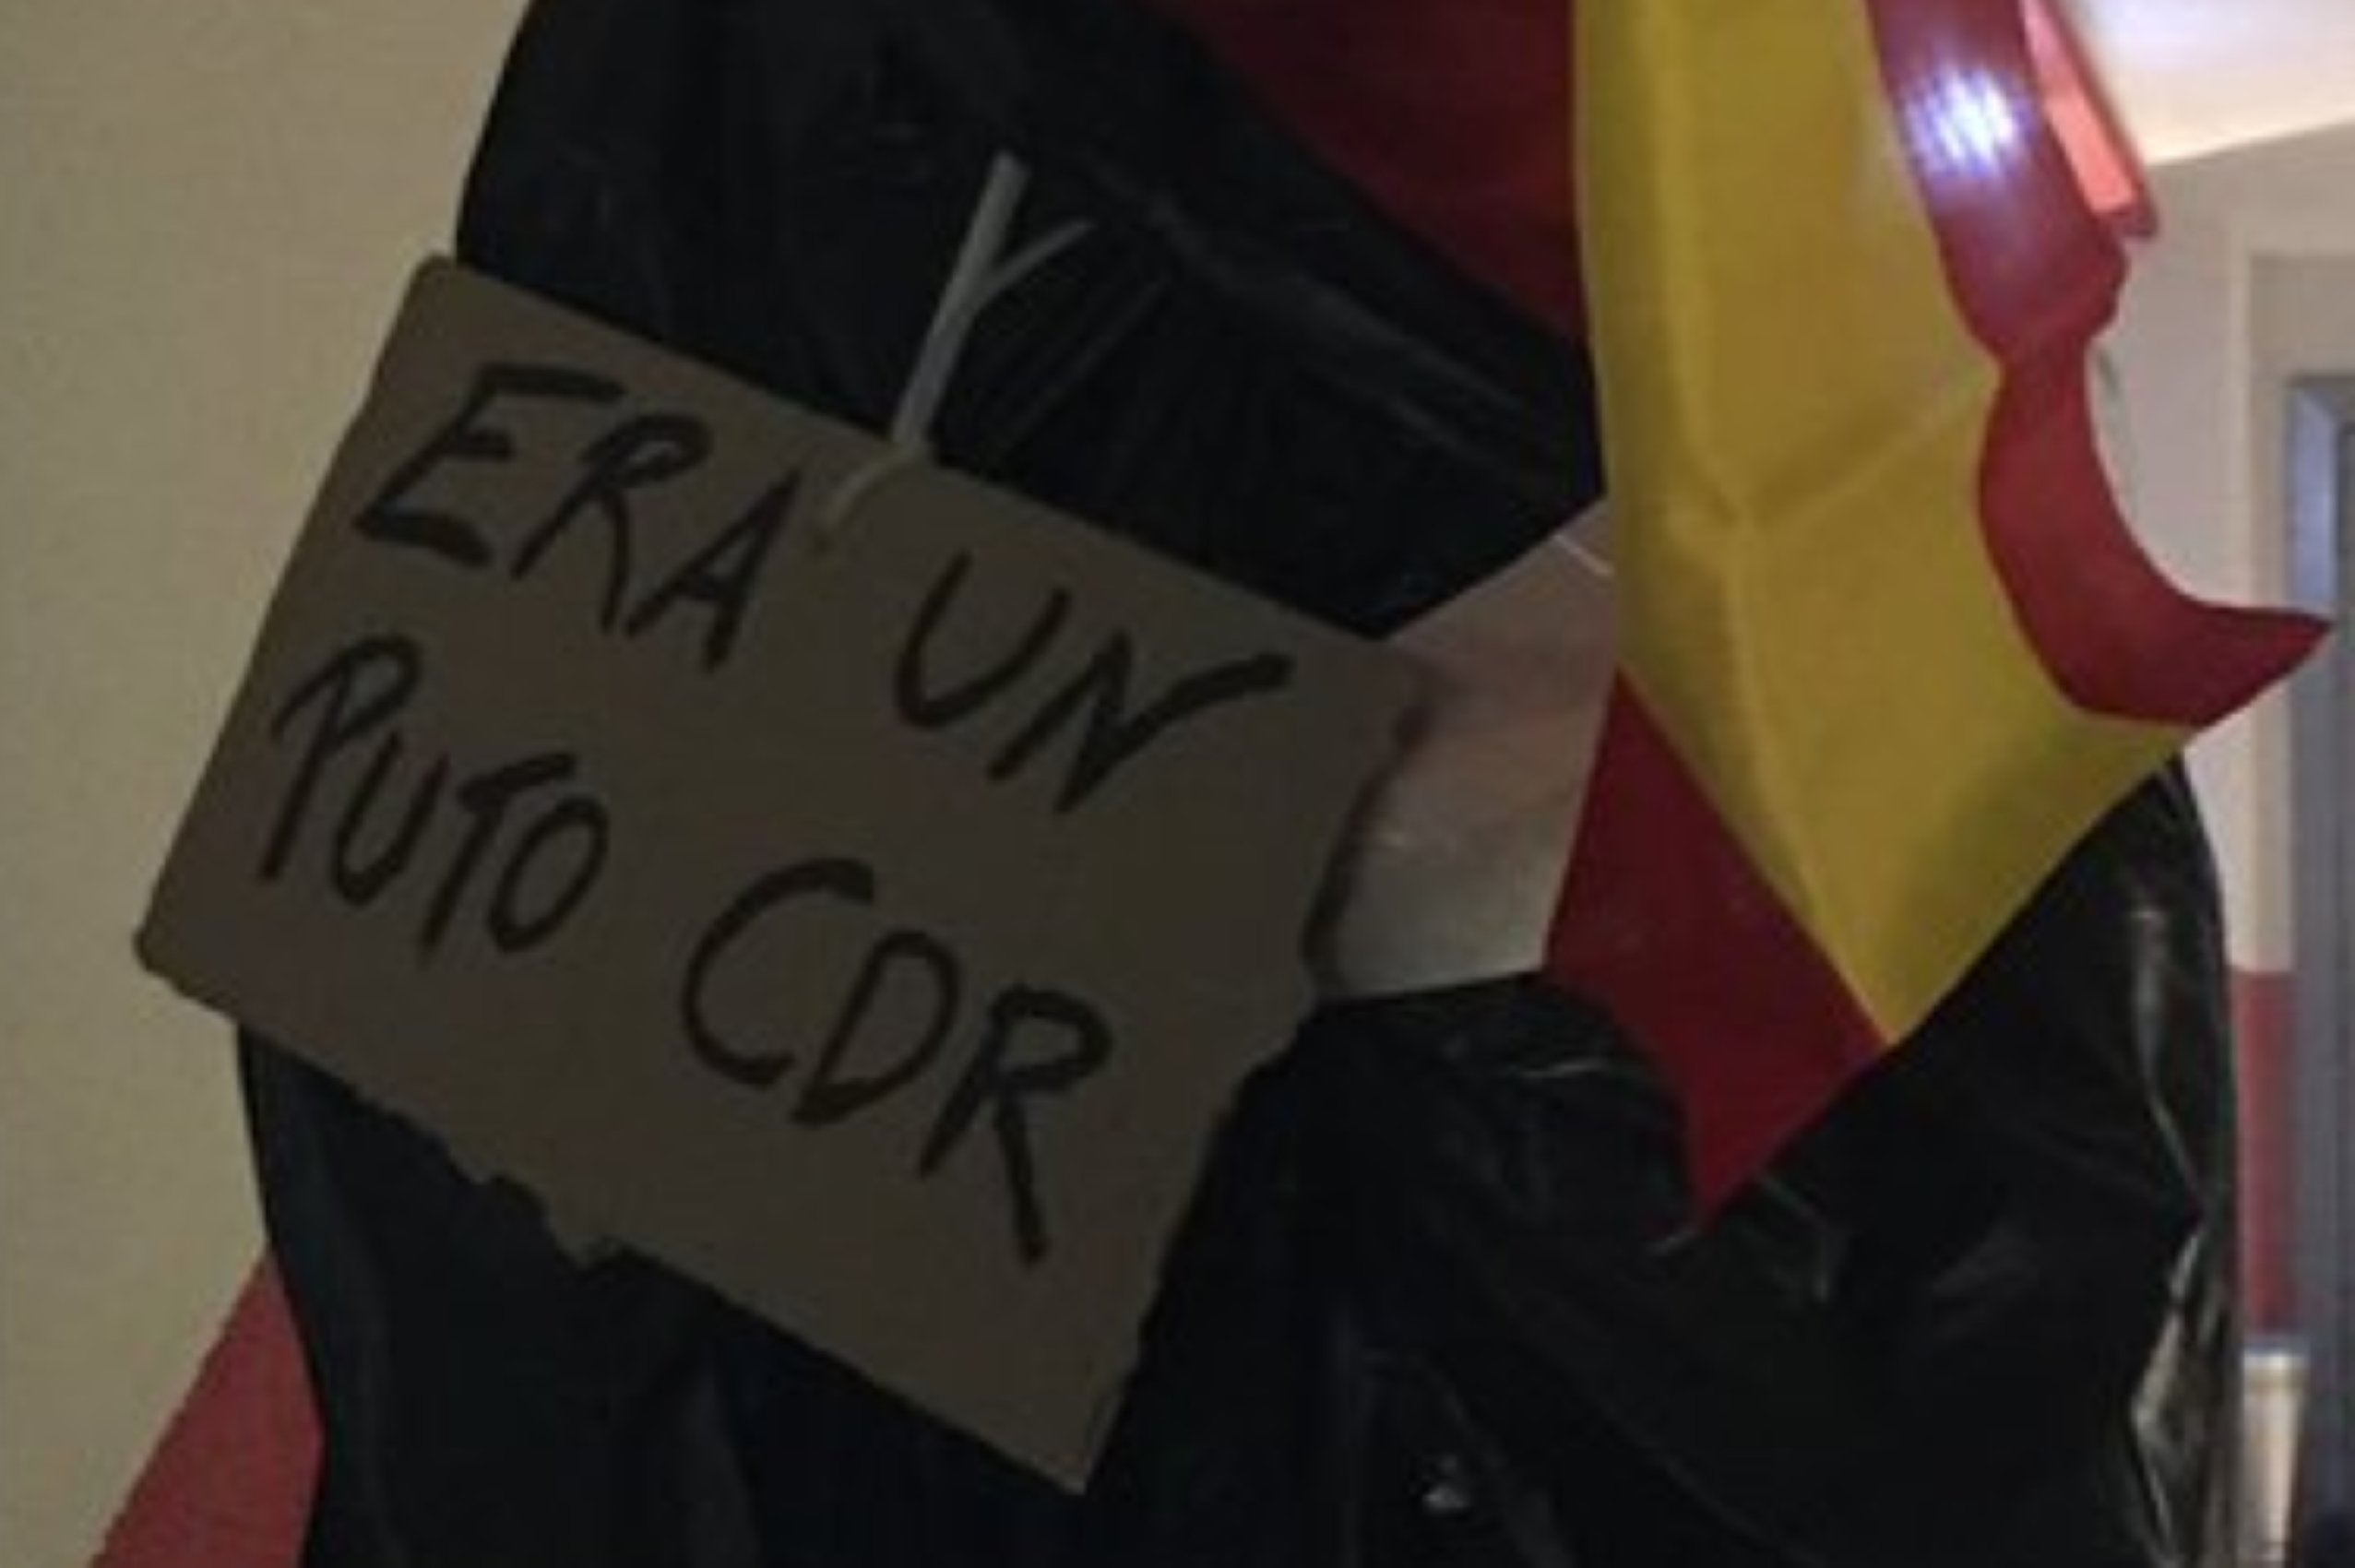 Ultras celebran Halloween colgando a un "puto CDR": el centro, indignado